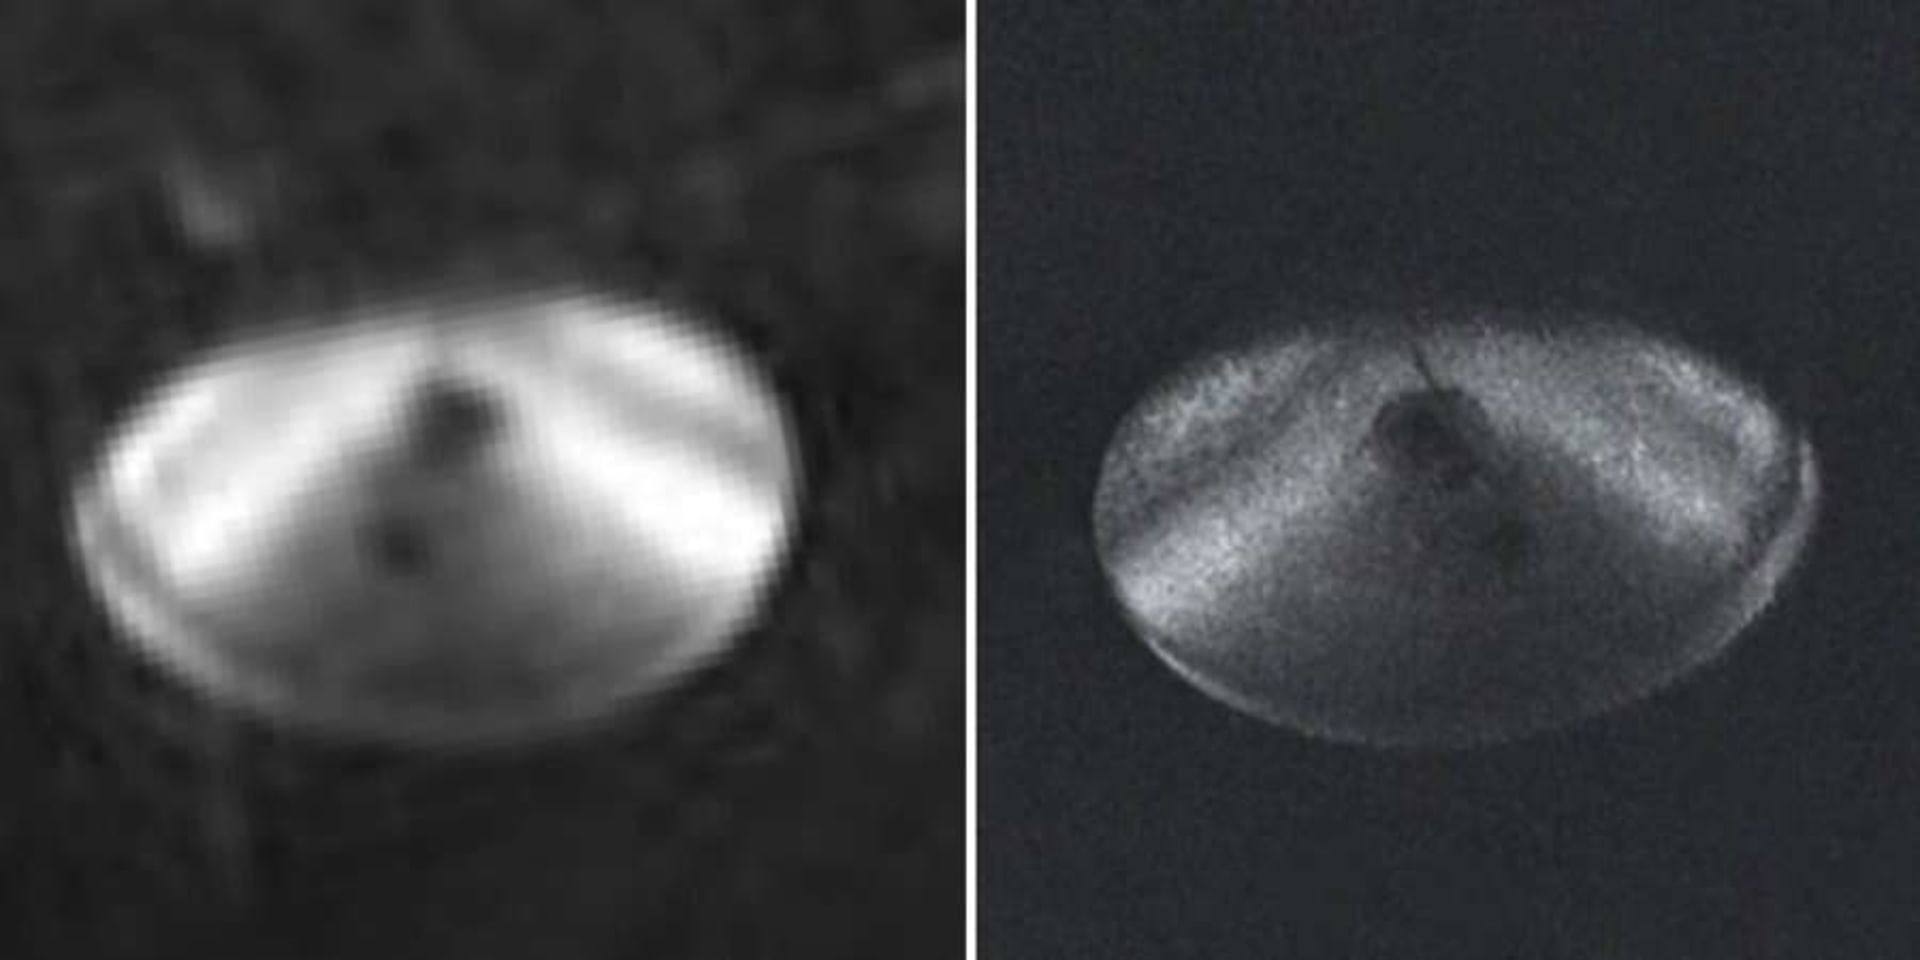 Srovnání UFO nad Lago Cote, původní snímek vlevo, HD vpravo